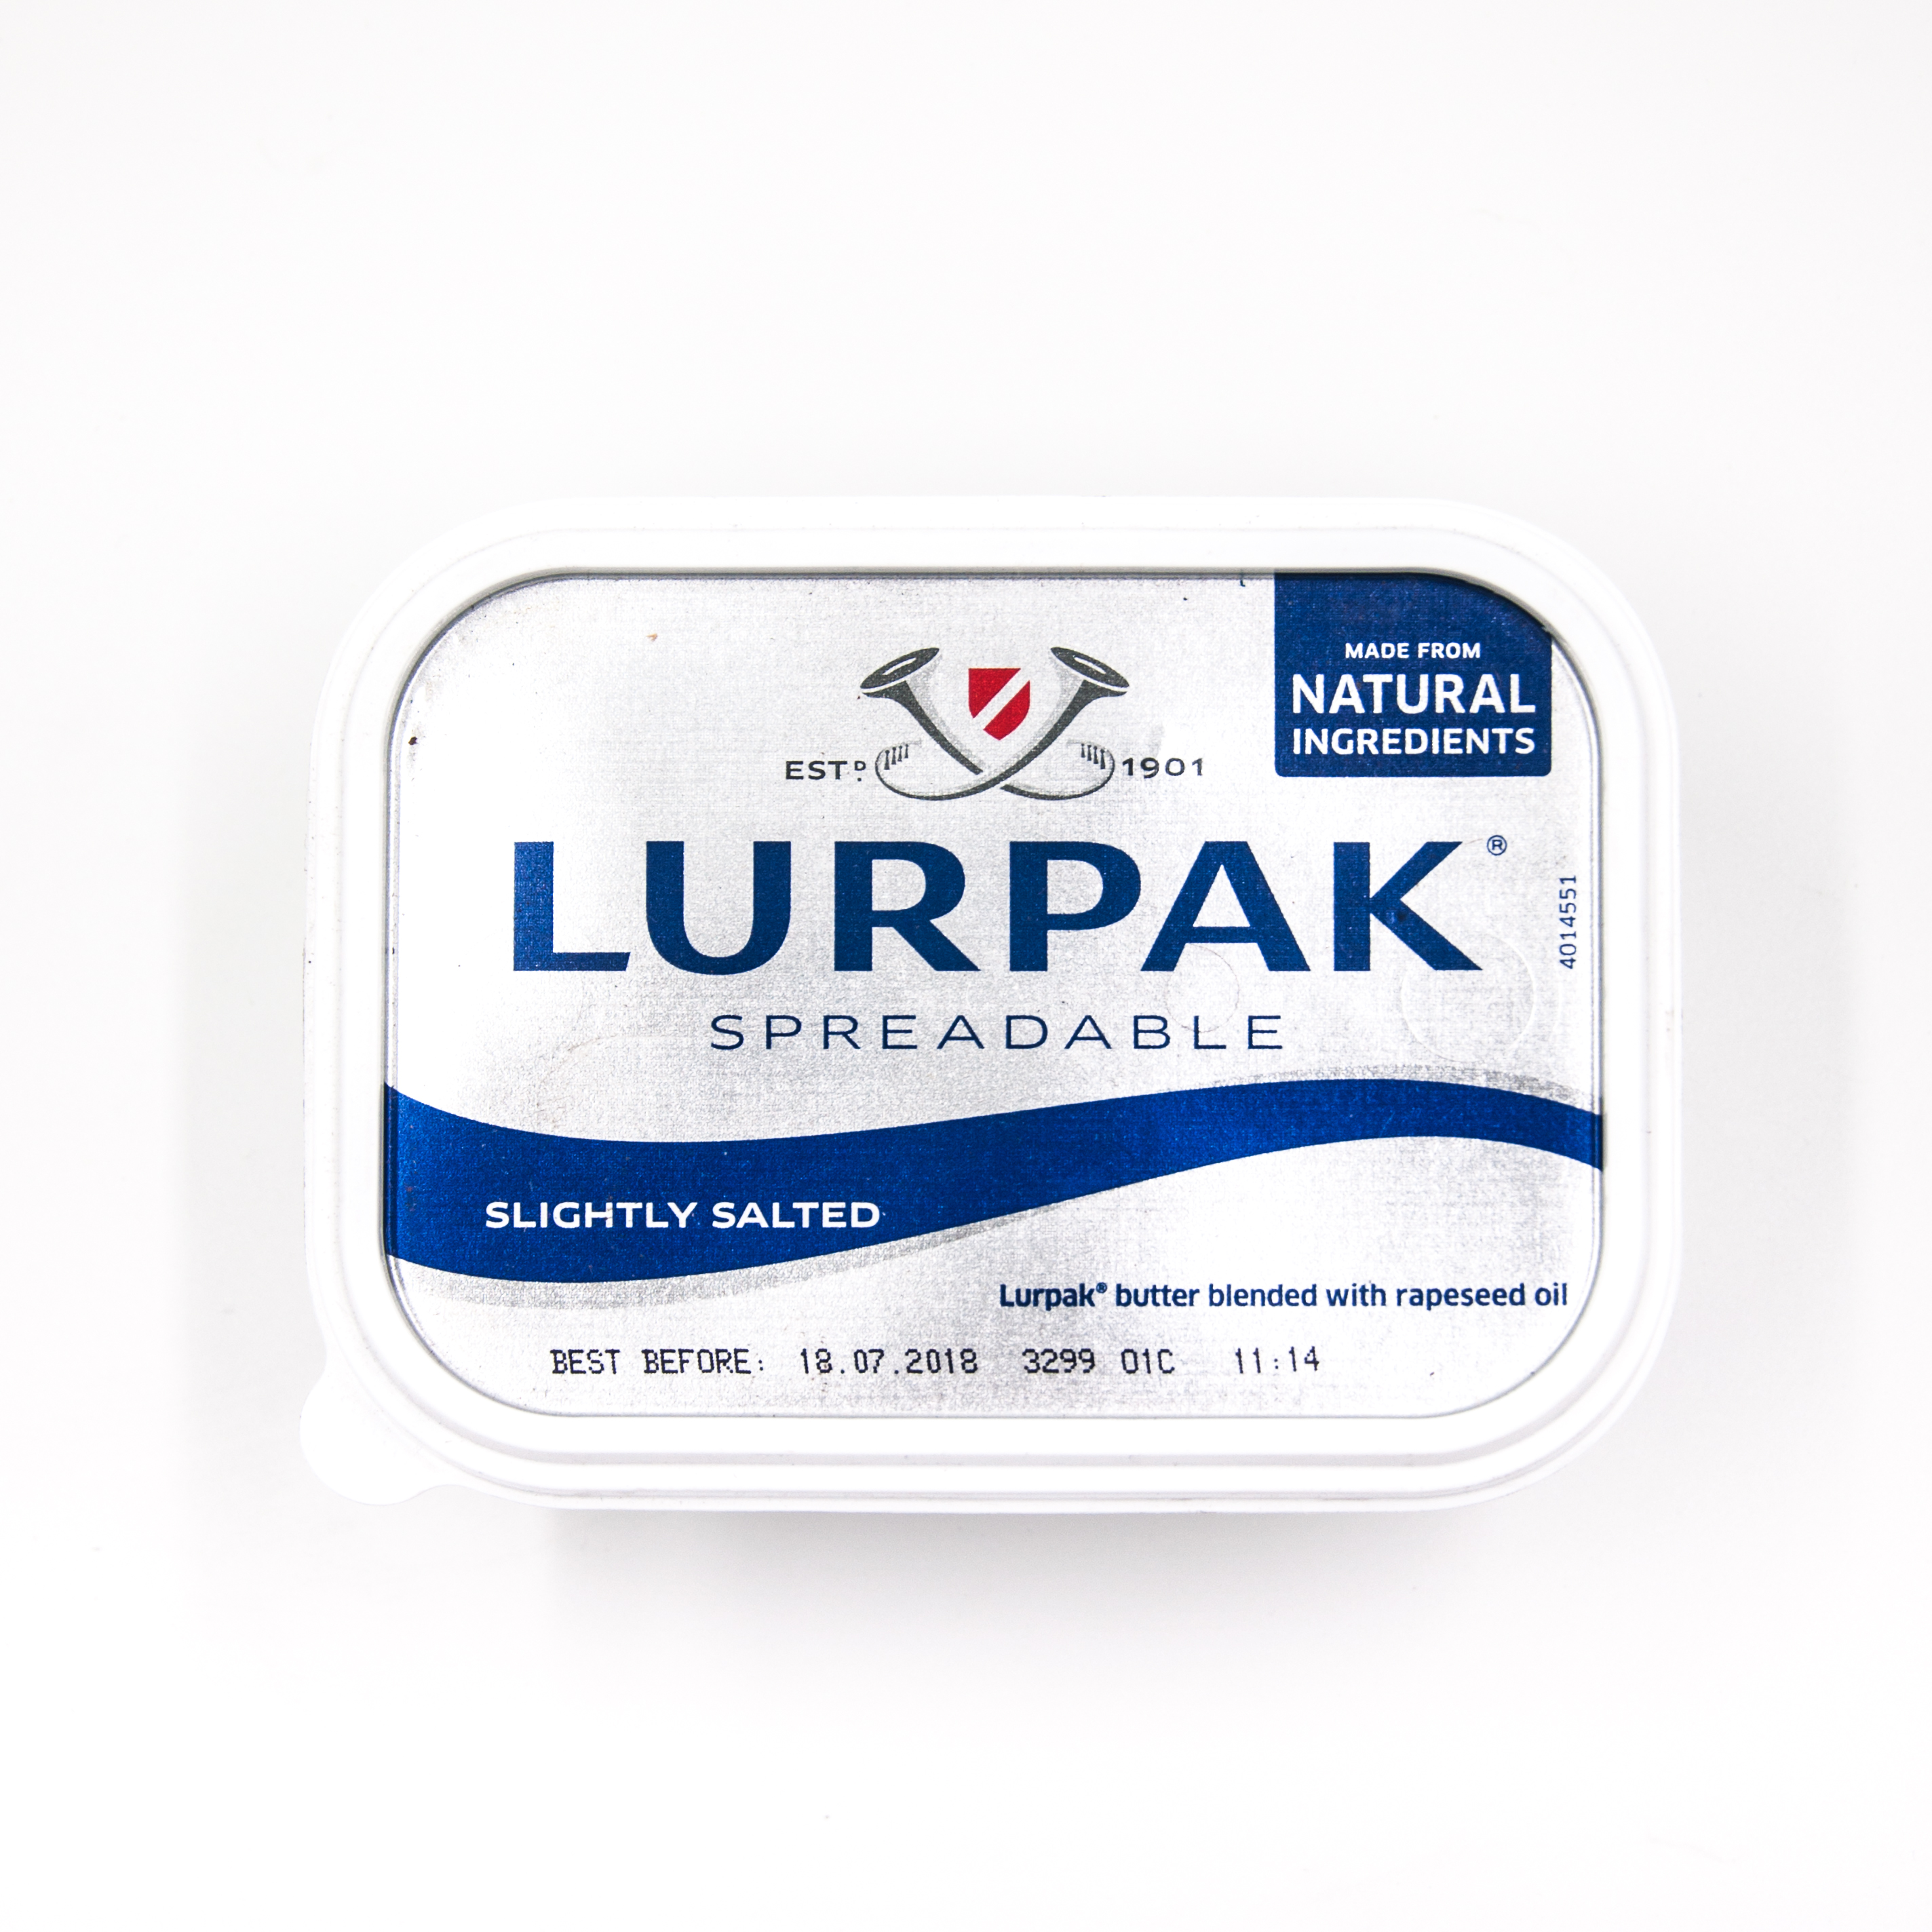 Lurpak Lurpak Spreadable Slightly Salted 500g